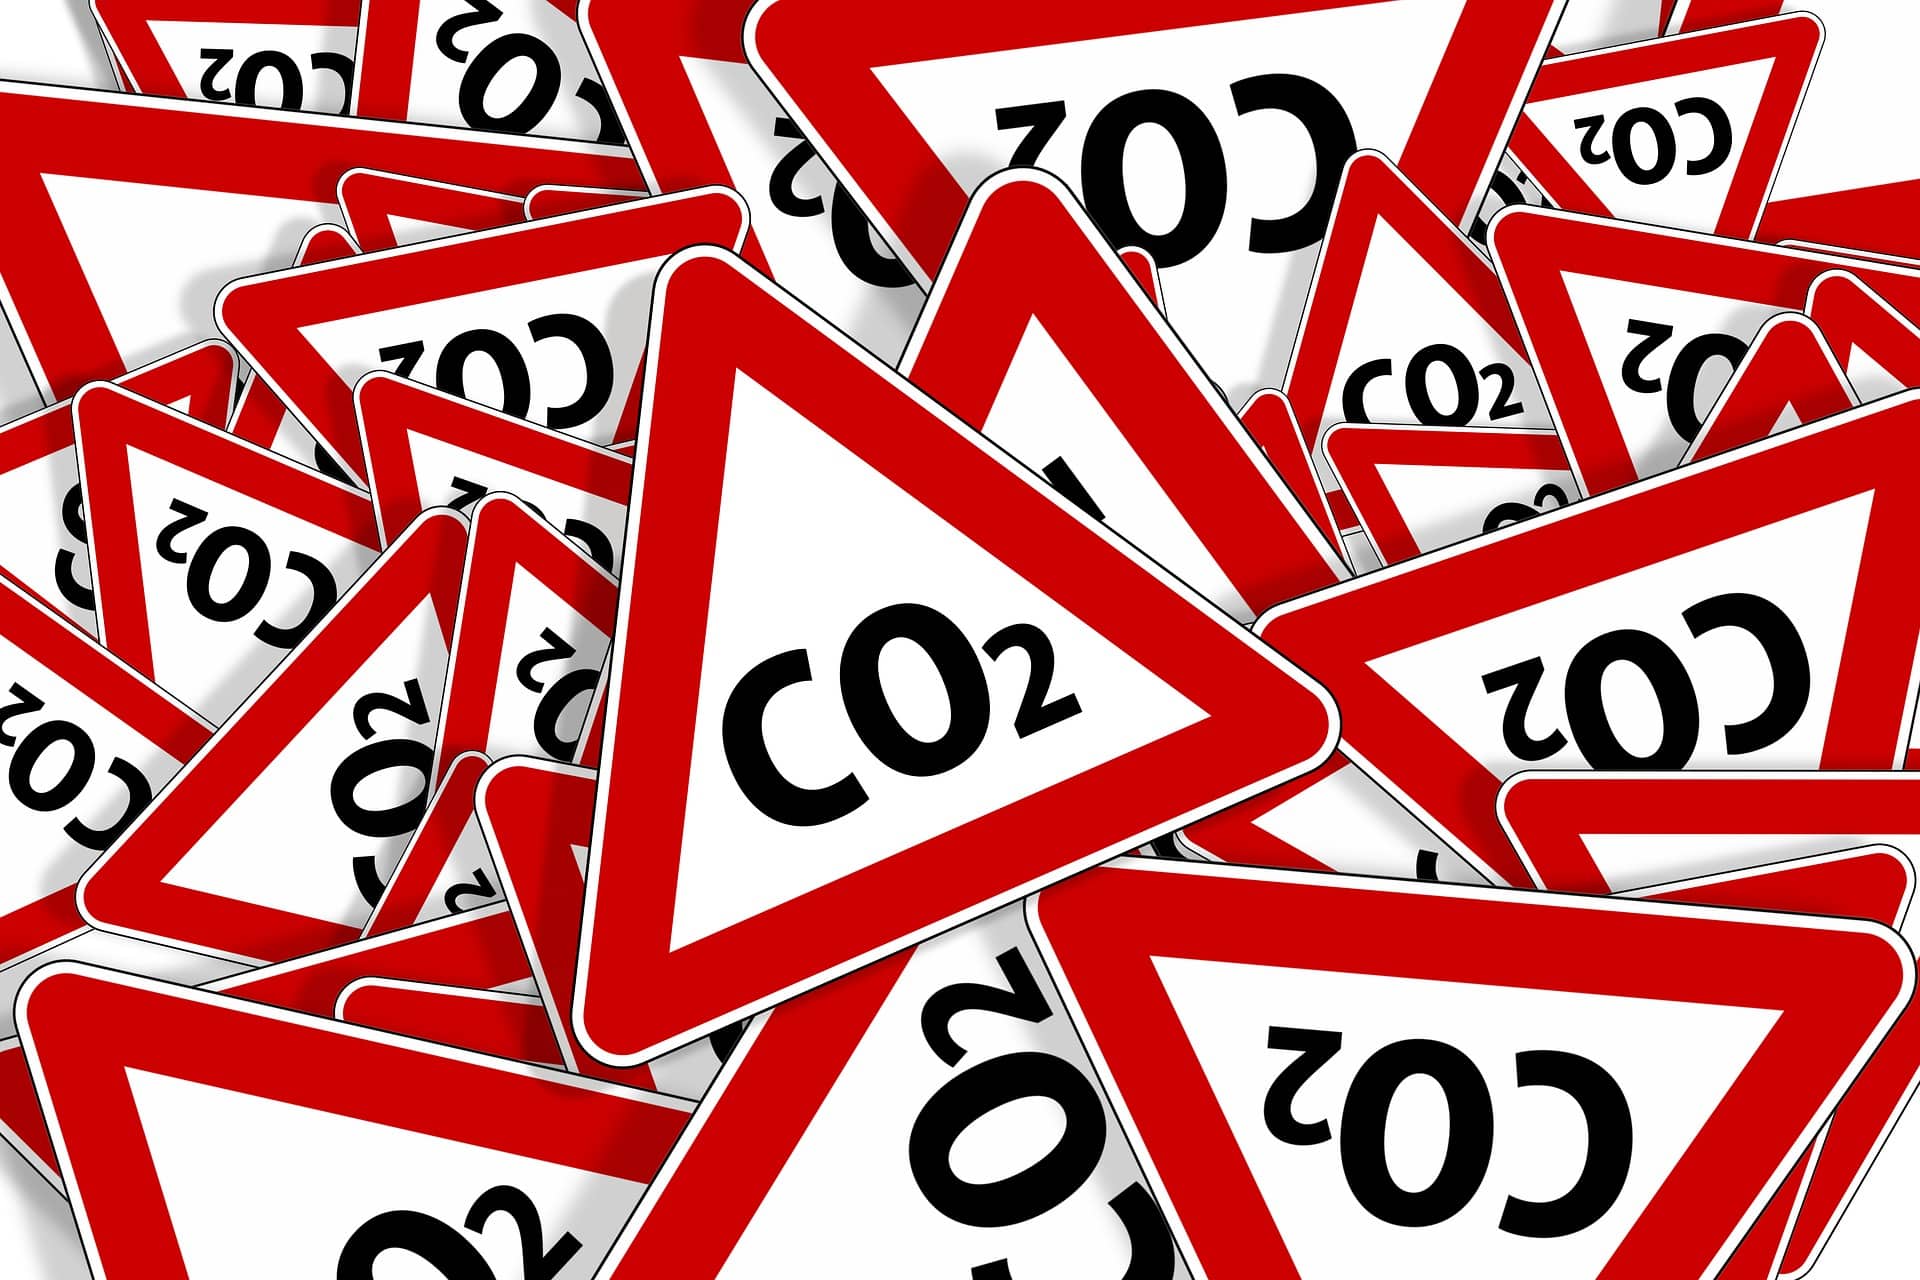 Peligro CO2 nuevo impuesto